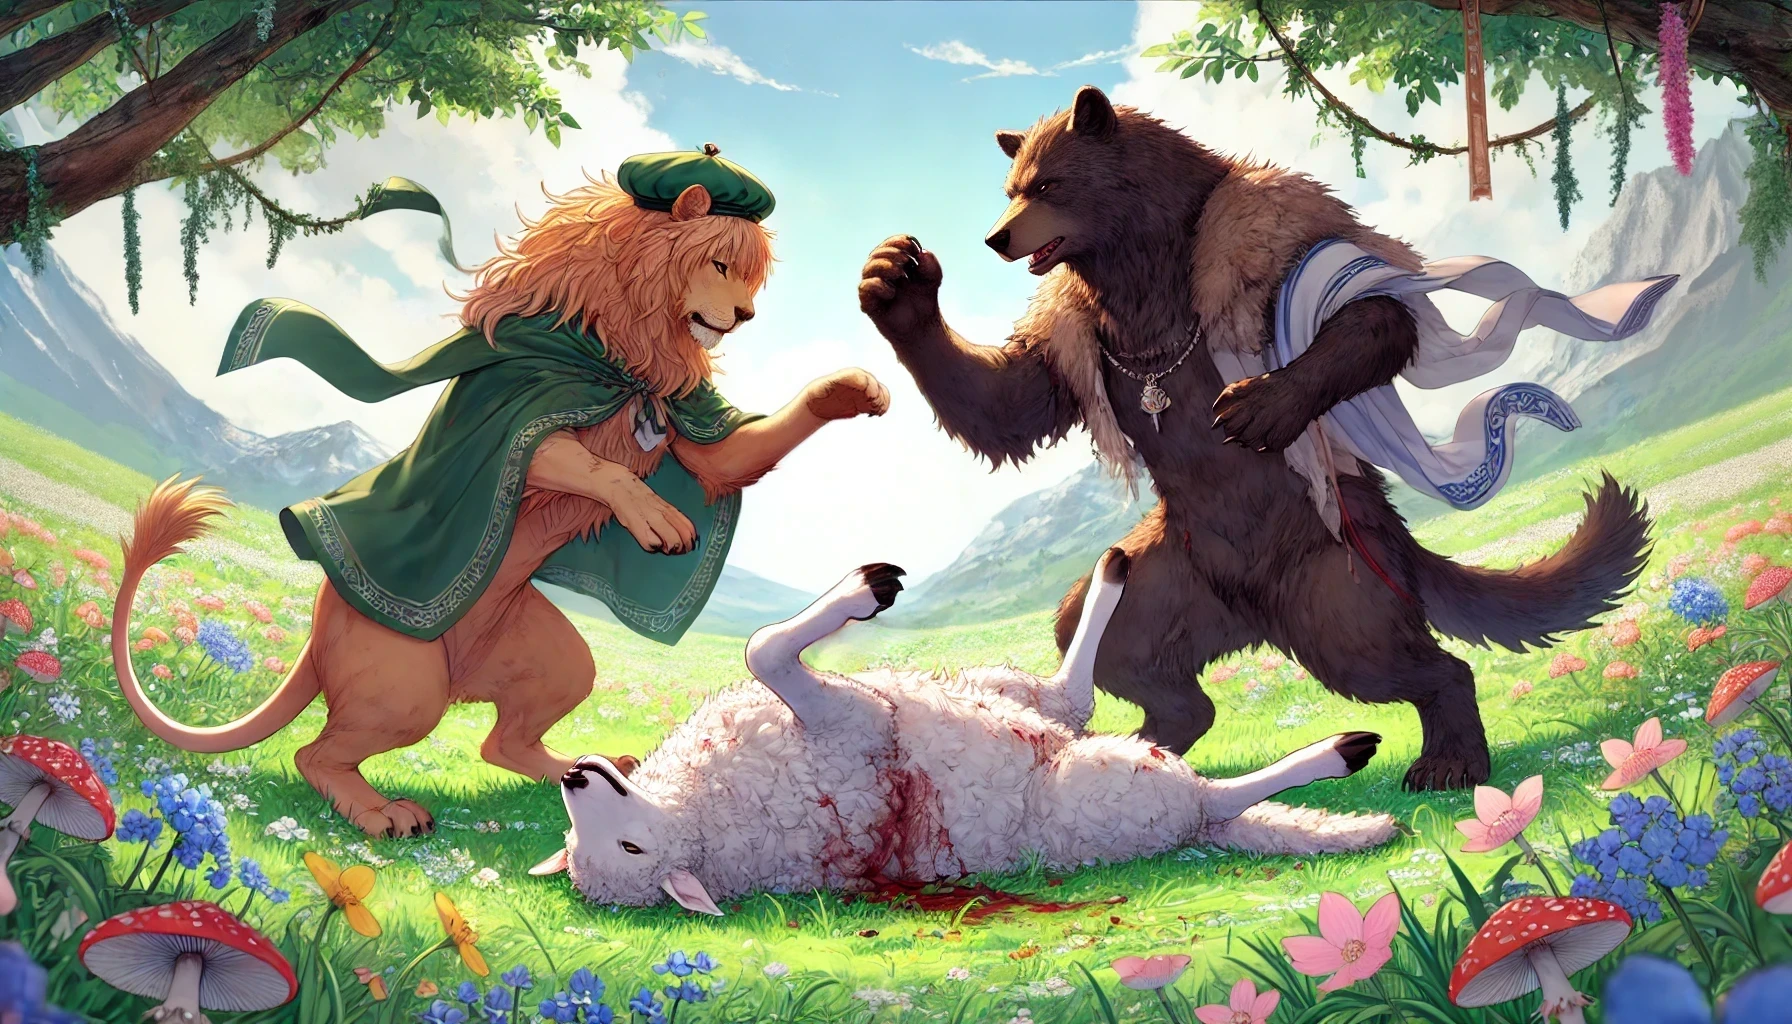 ราชสีห์ หมีและหมาป่า